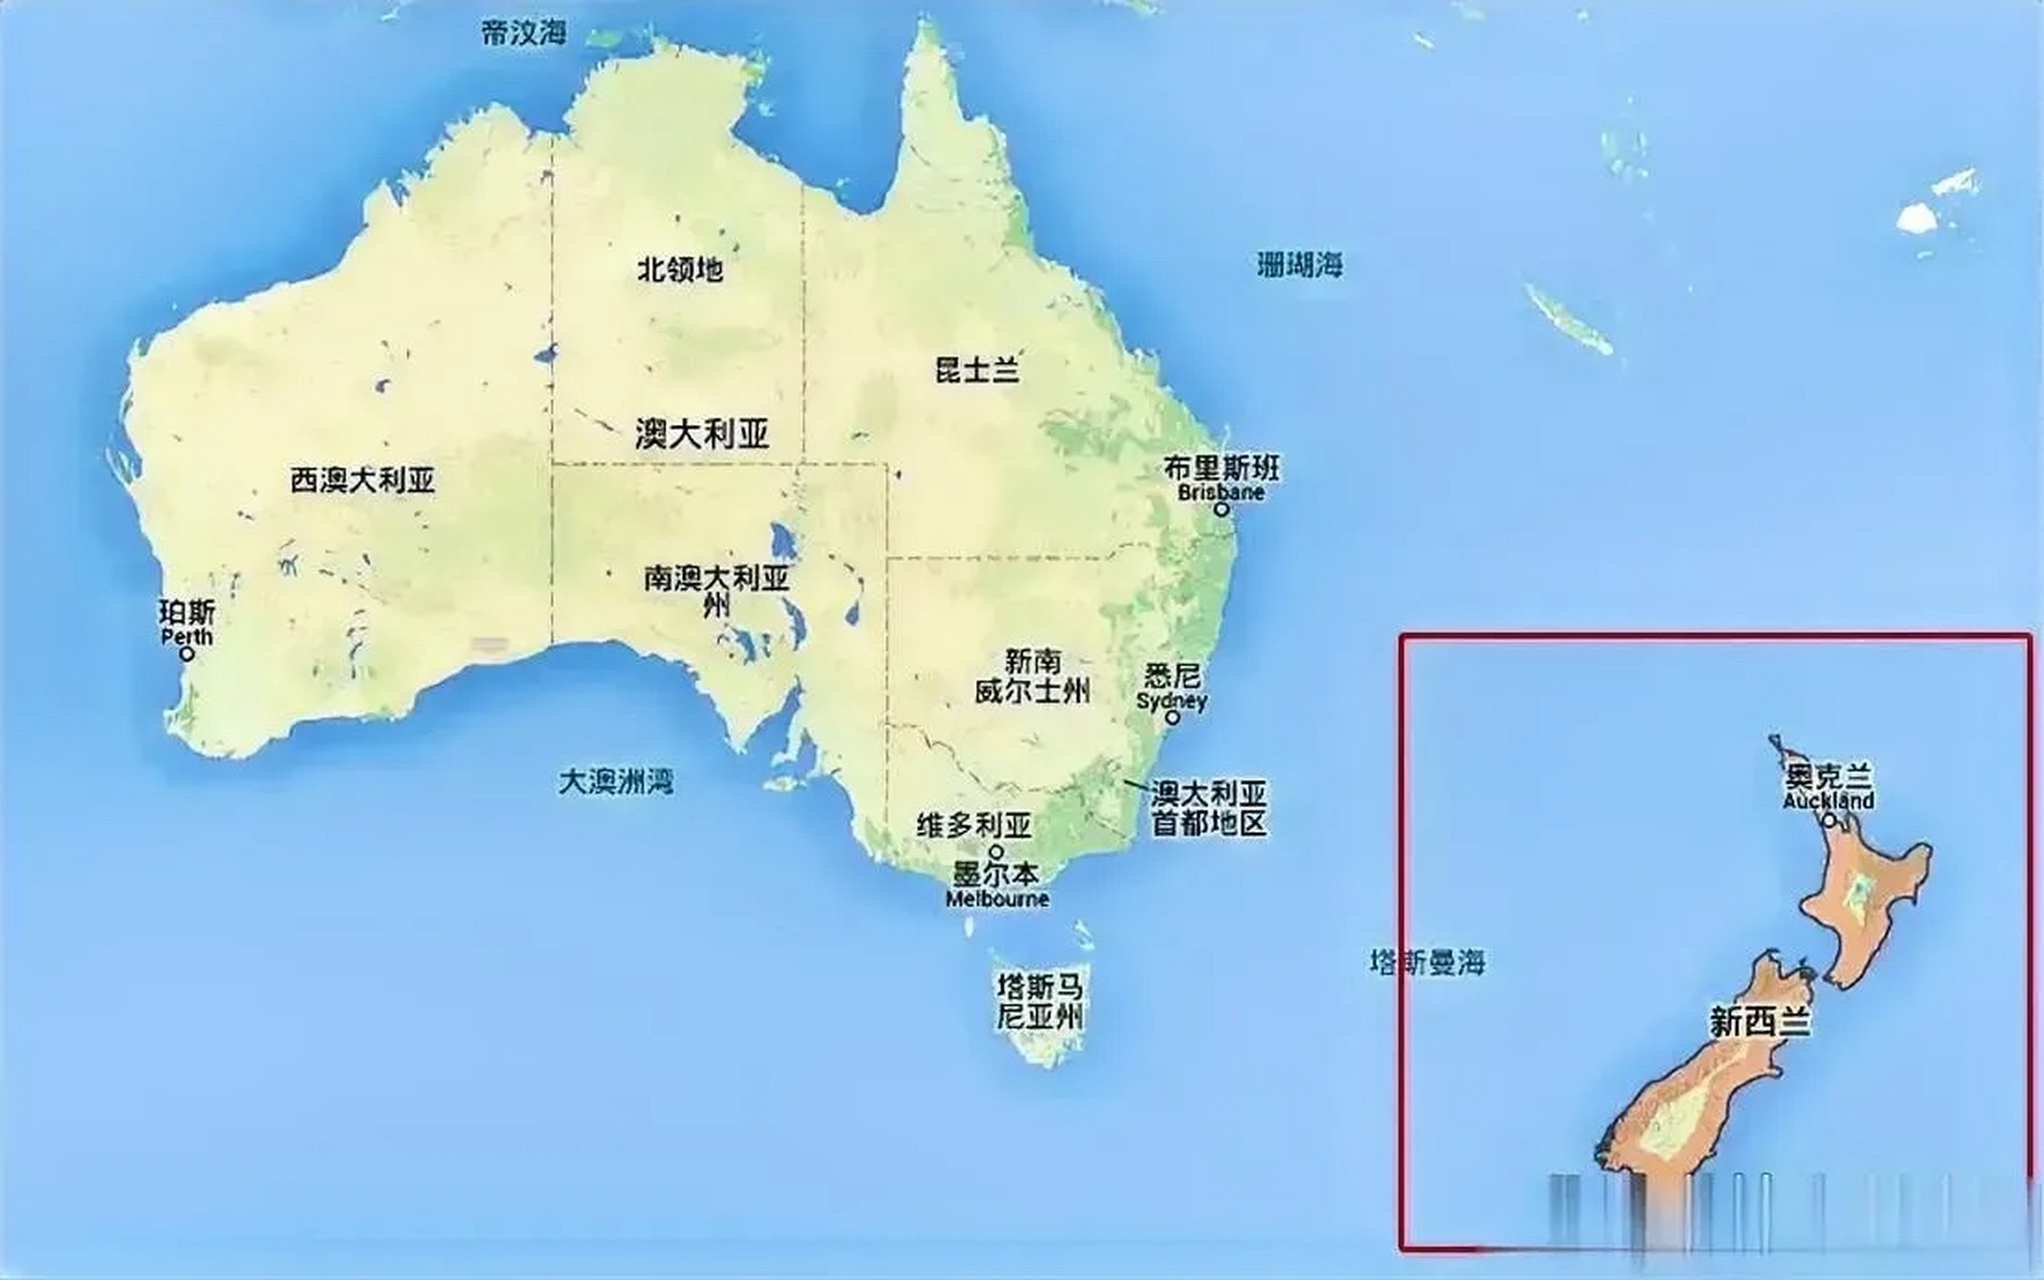 澳大利亚和新西兰宣布不参加即将在中国杭州举行的亚运会,他们表示